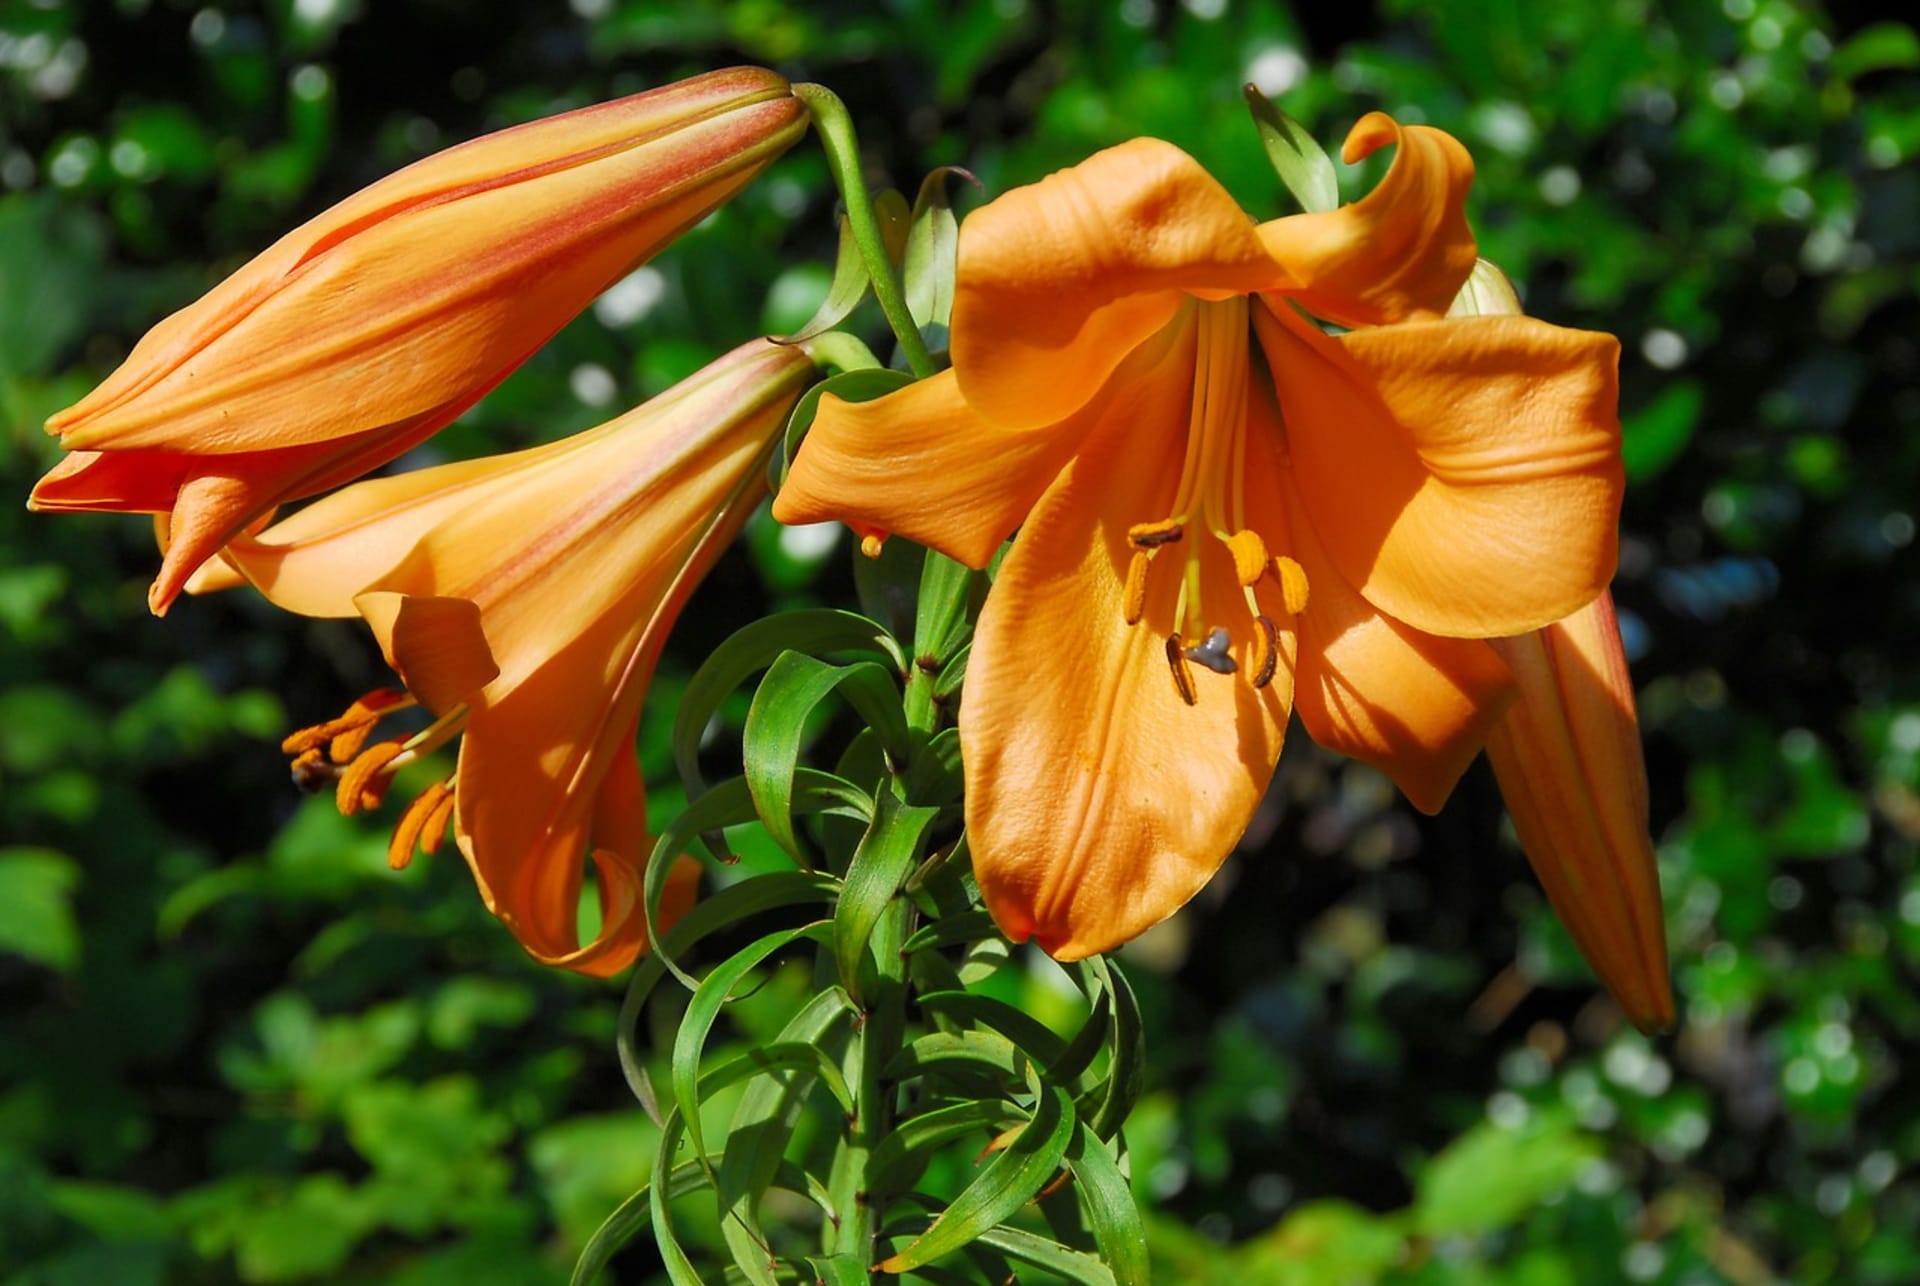 Trubkovité (trumpetové) hybridy lilií dsou skvělá k řezu. Kvetou dva až tři týdny. Na snímku kultivar African Queen.